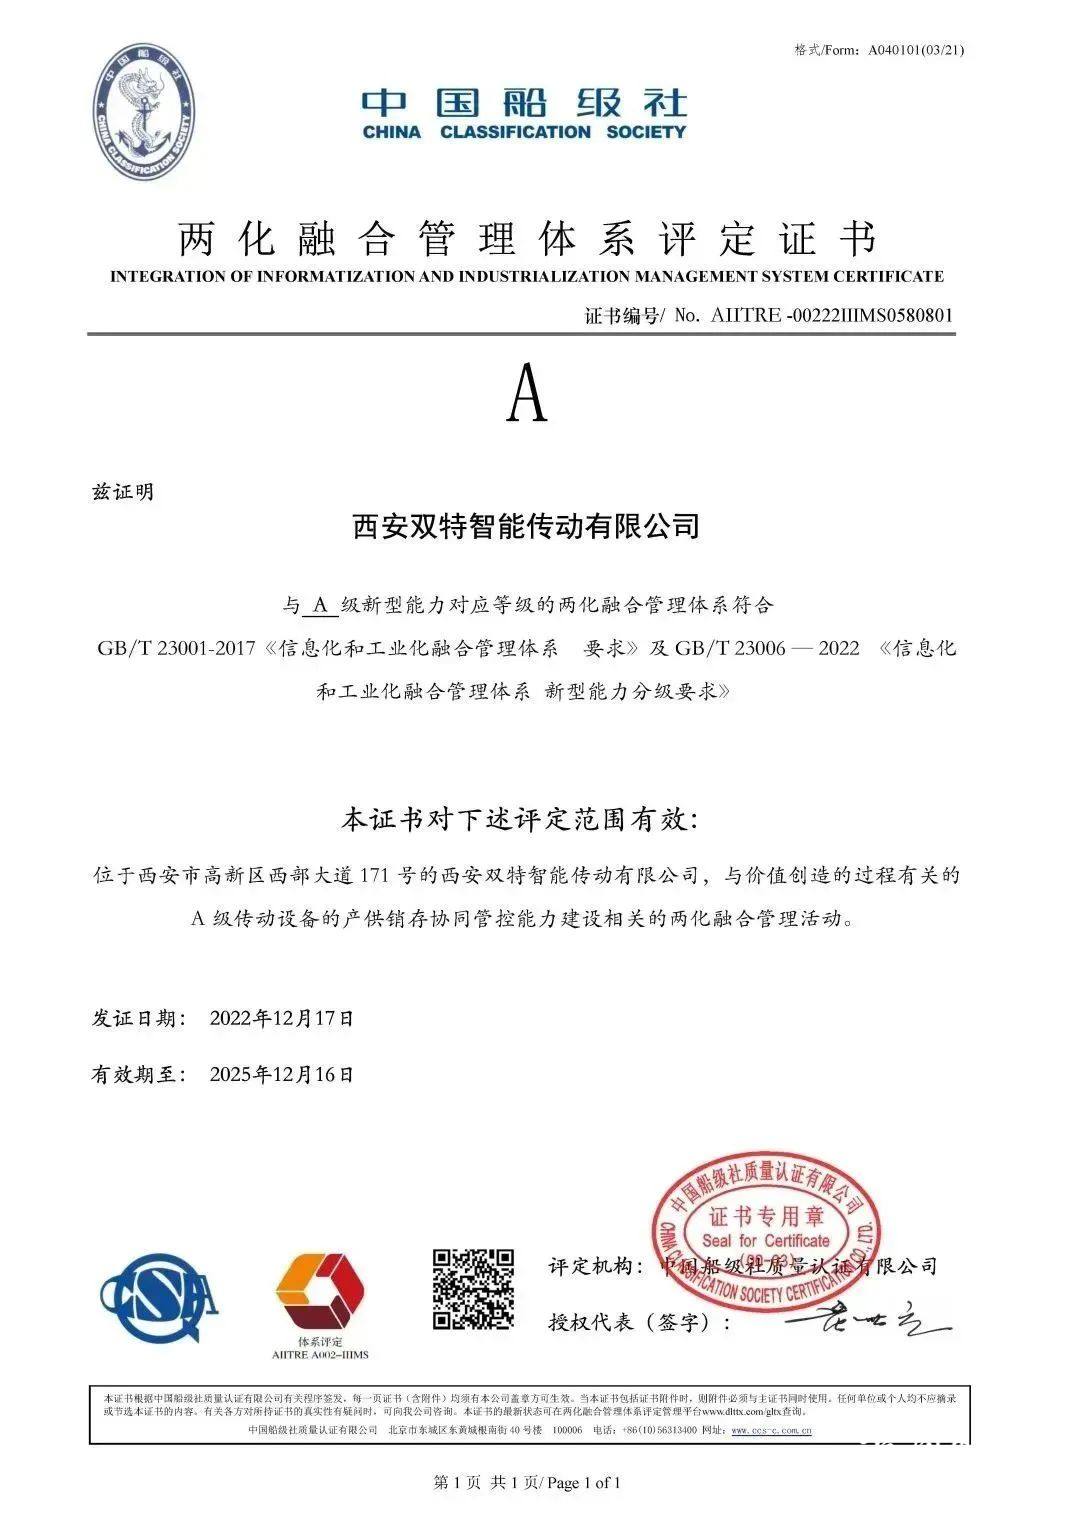 双特公司获得两化融合管理体系评定证书